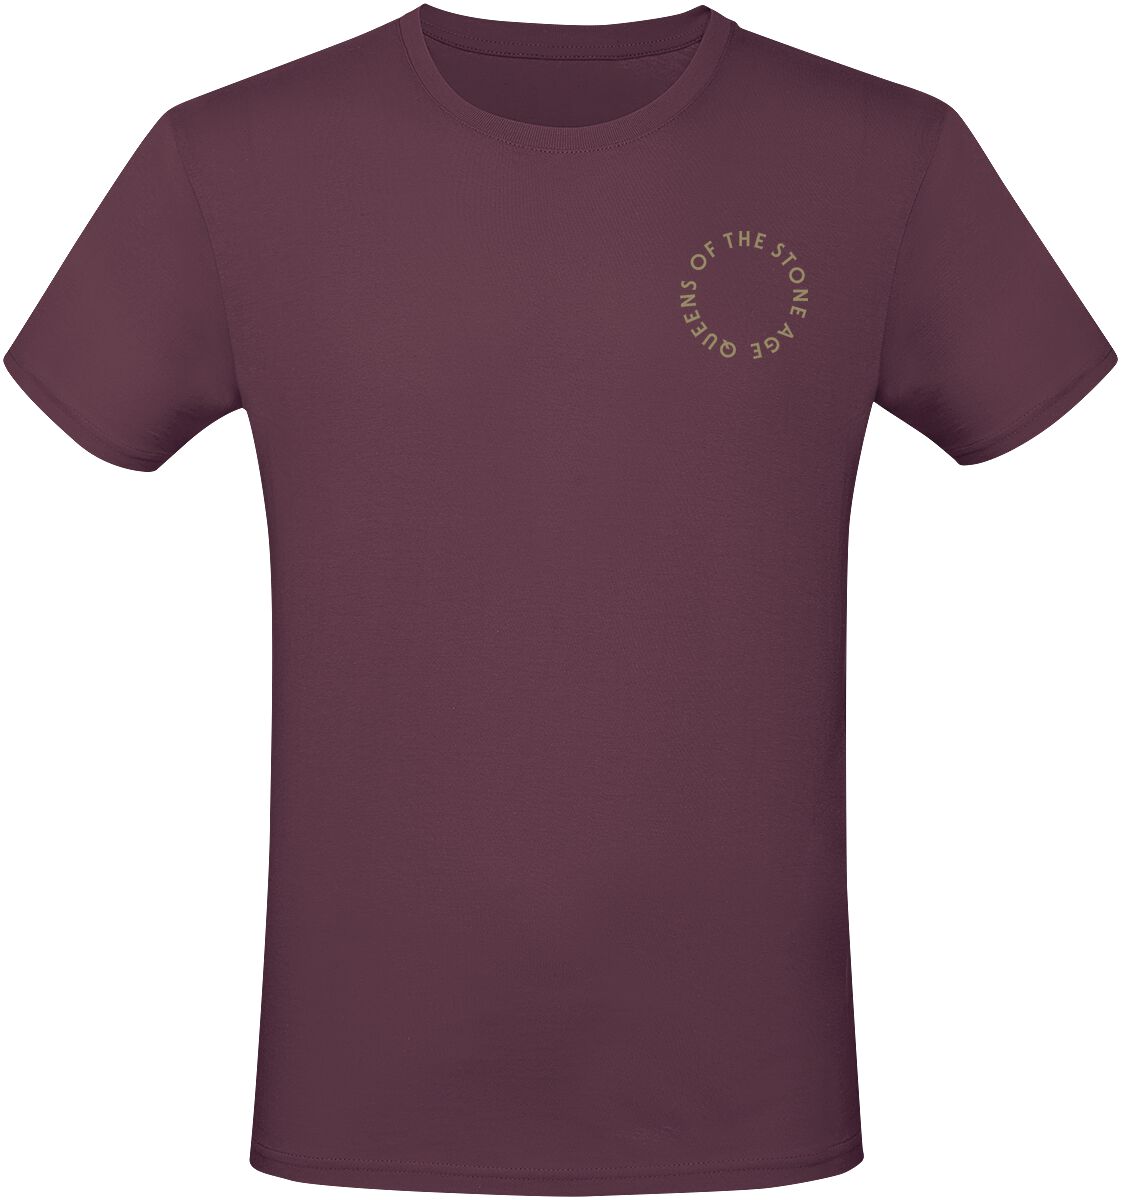 Queens Of The Stone Age T-Shirt - In Times New Roman - Snakes - S bis 3XL - für Männer - Größe L - burgund  - Lizenziertes Merchandise!